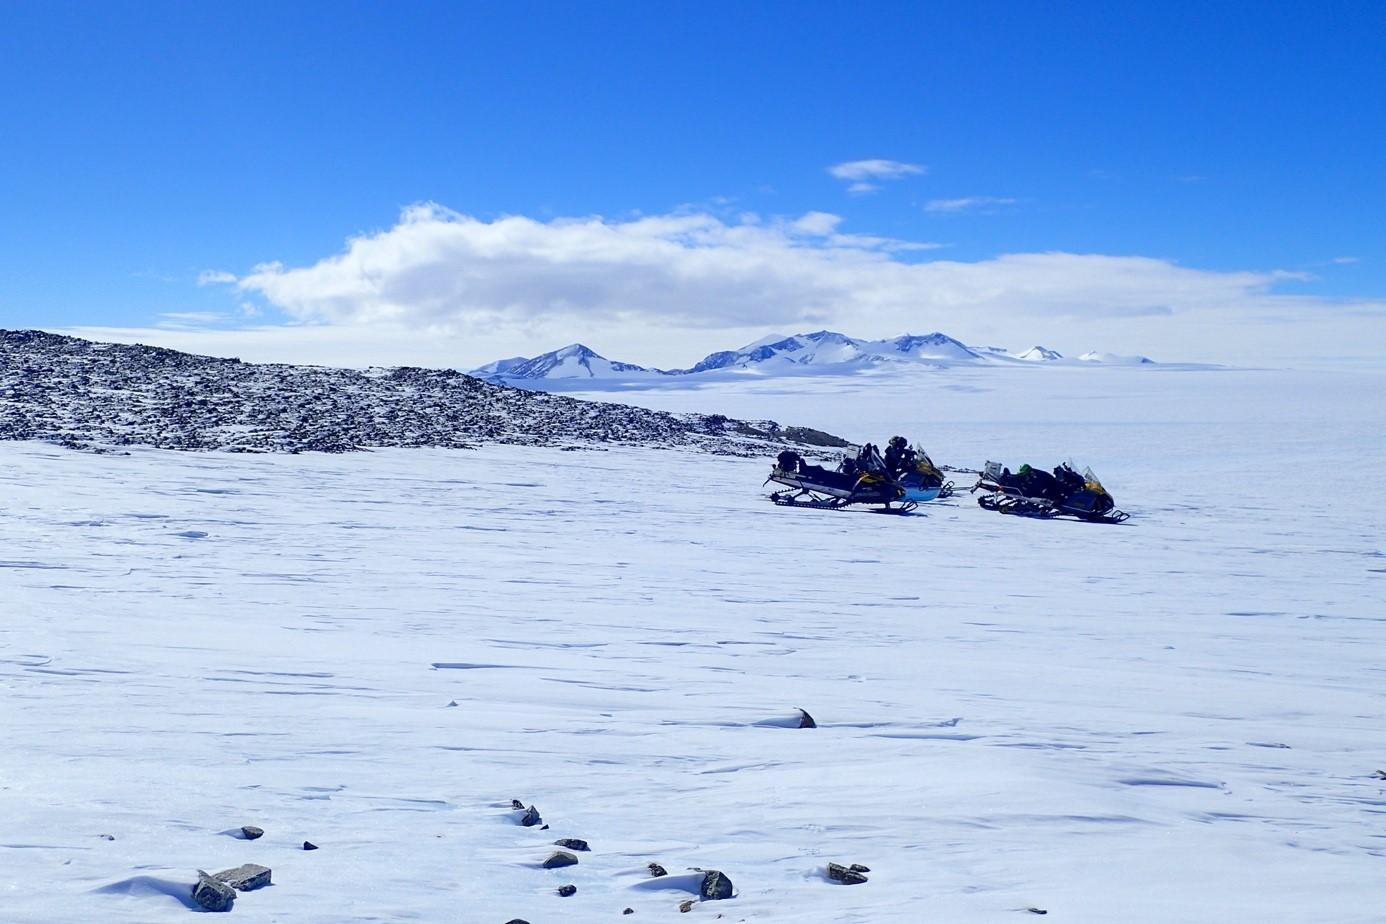 La météorite de 7,6 kilos a été trouvée dans un vaste champ de glace bleue se trouvant entre les motoneiges garées vers une moraine et les montagnes Sør Rondane, au loin. [ETH Zürich - Maria Schönbächler]